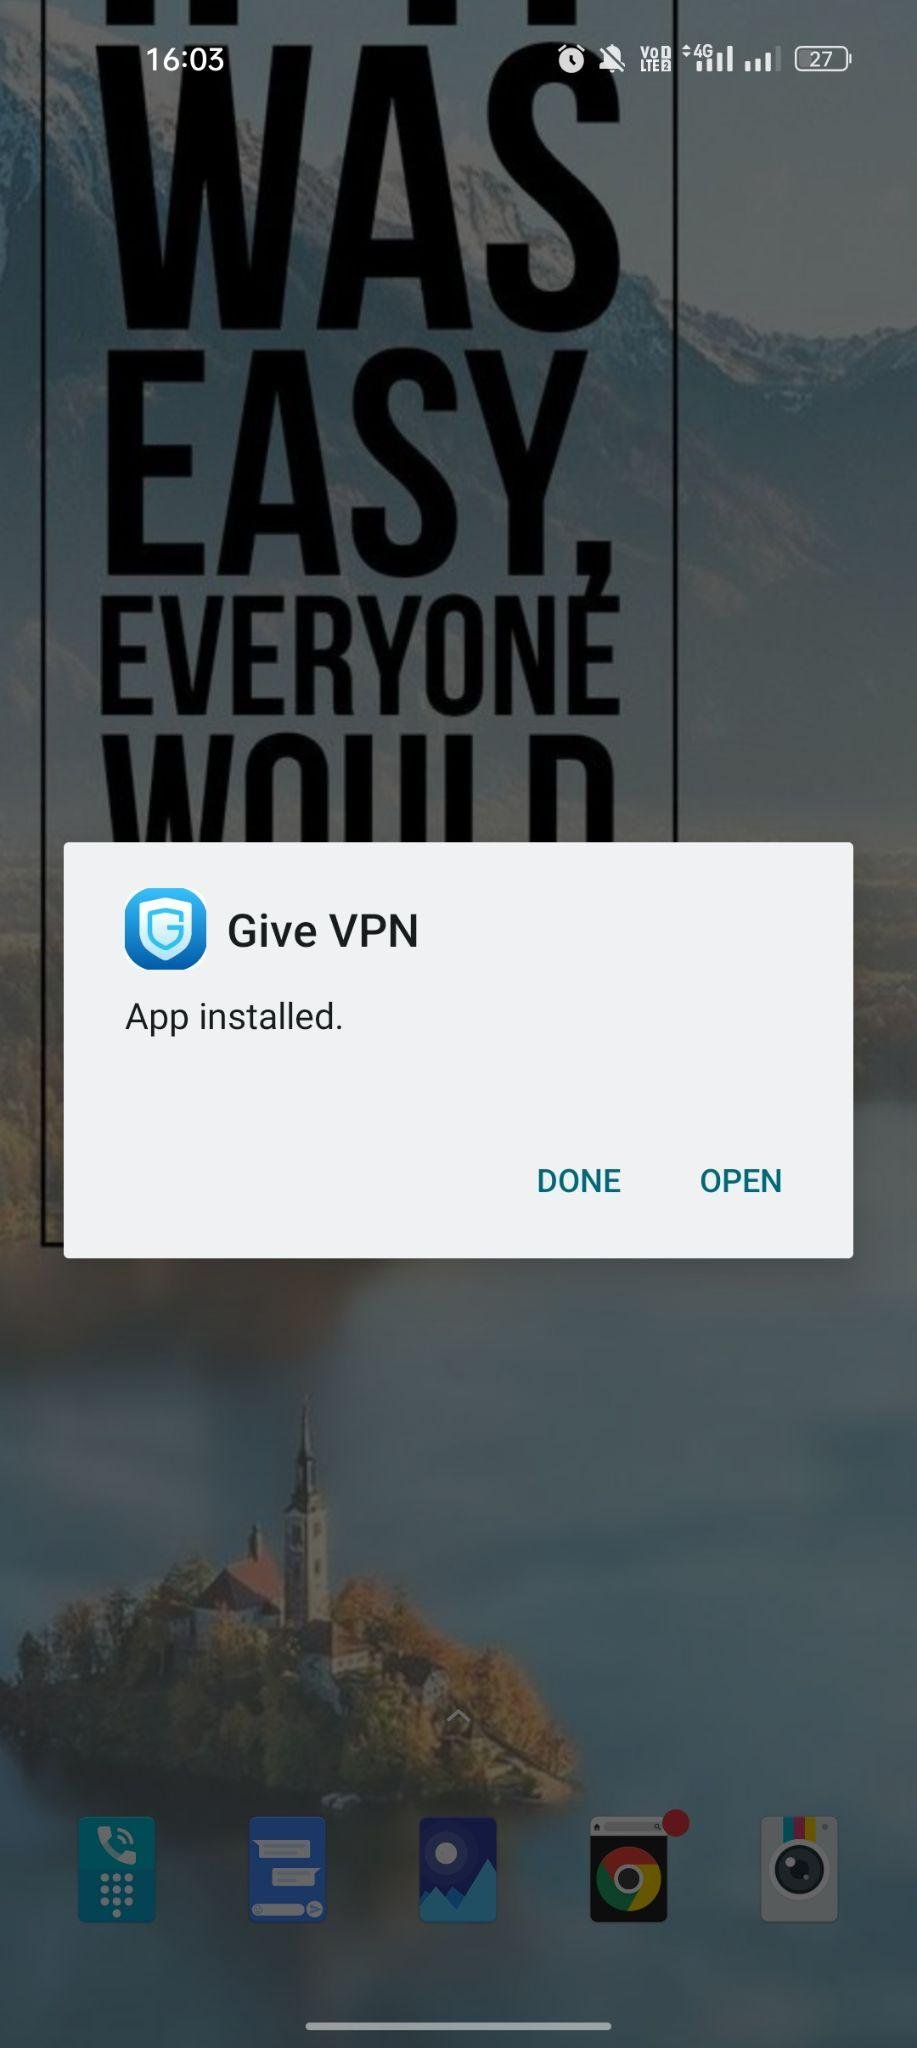 Give VPN apk installed